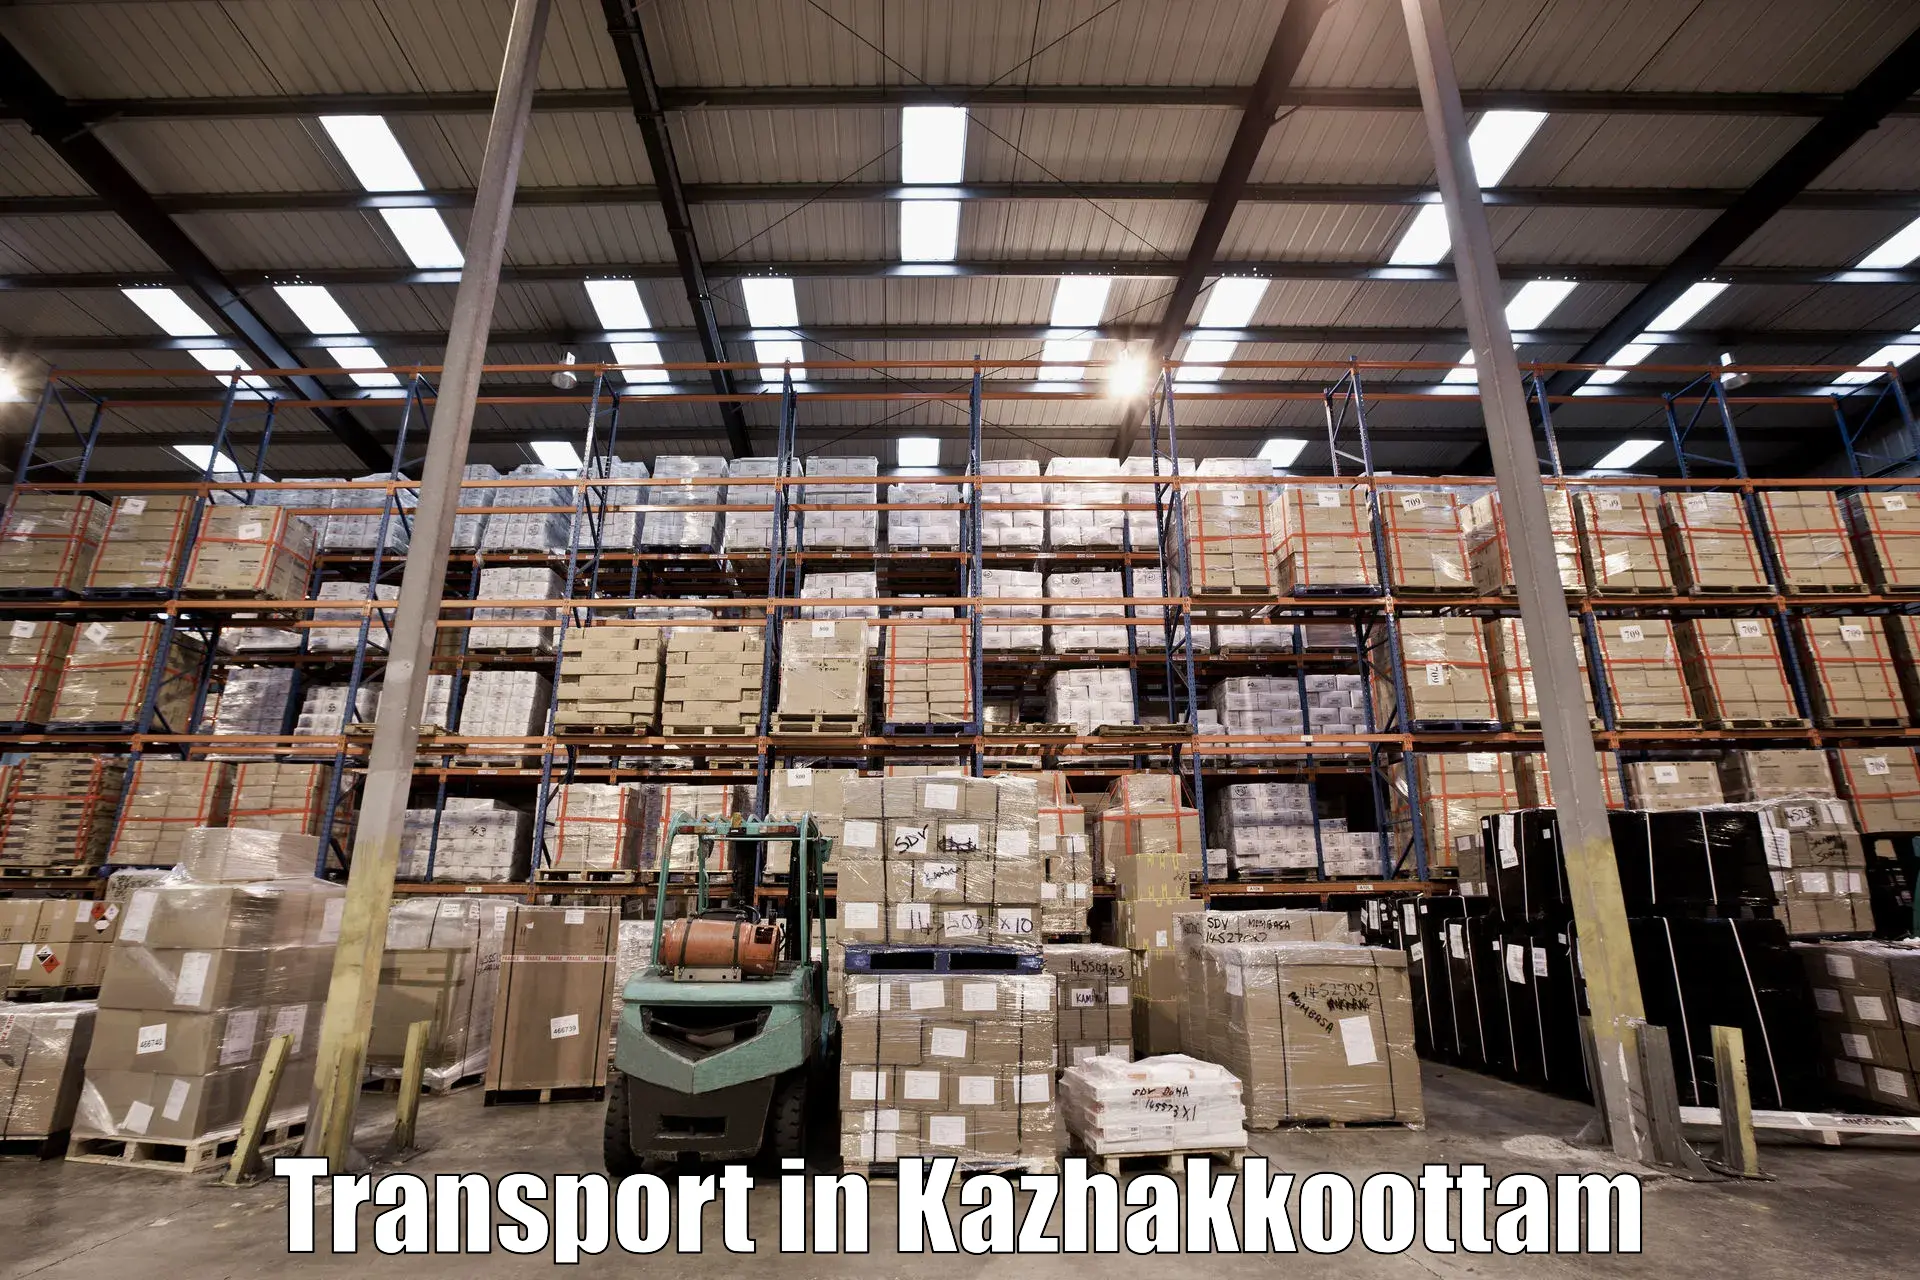 Luggage transport services in Kazhakkoottam